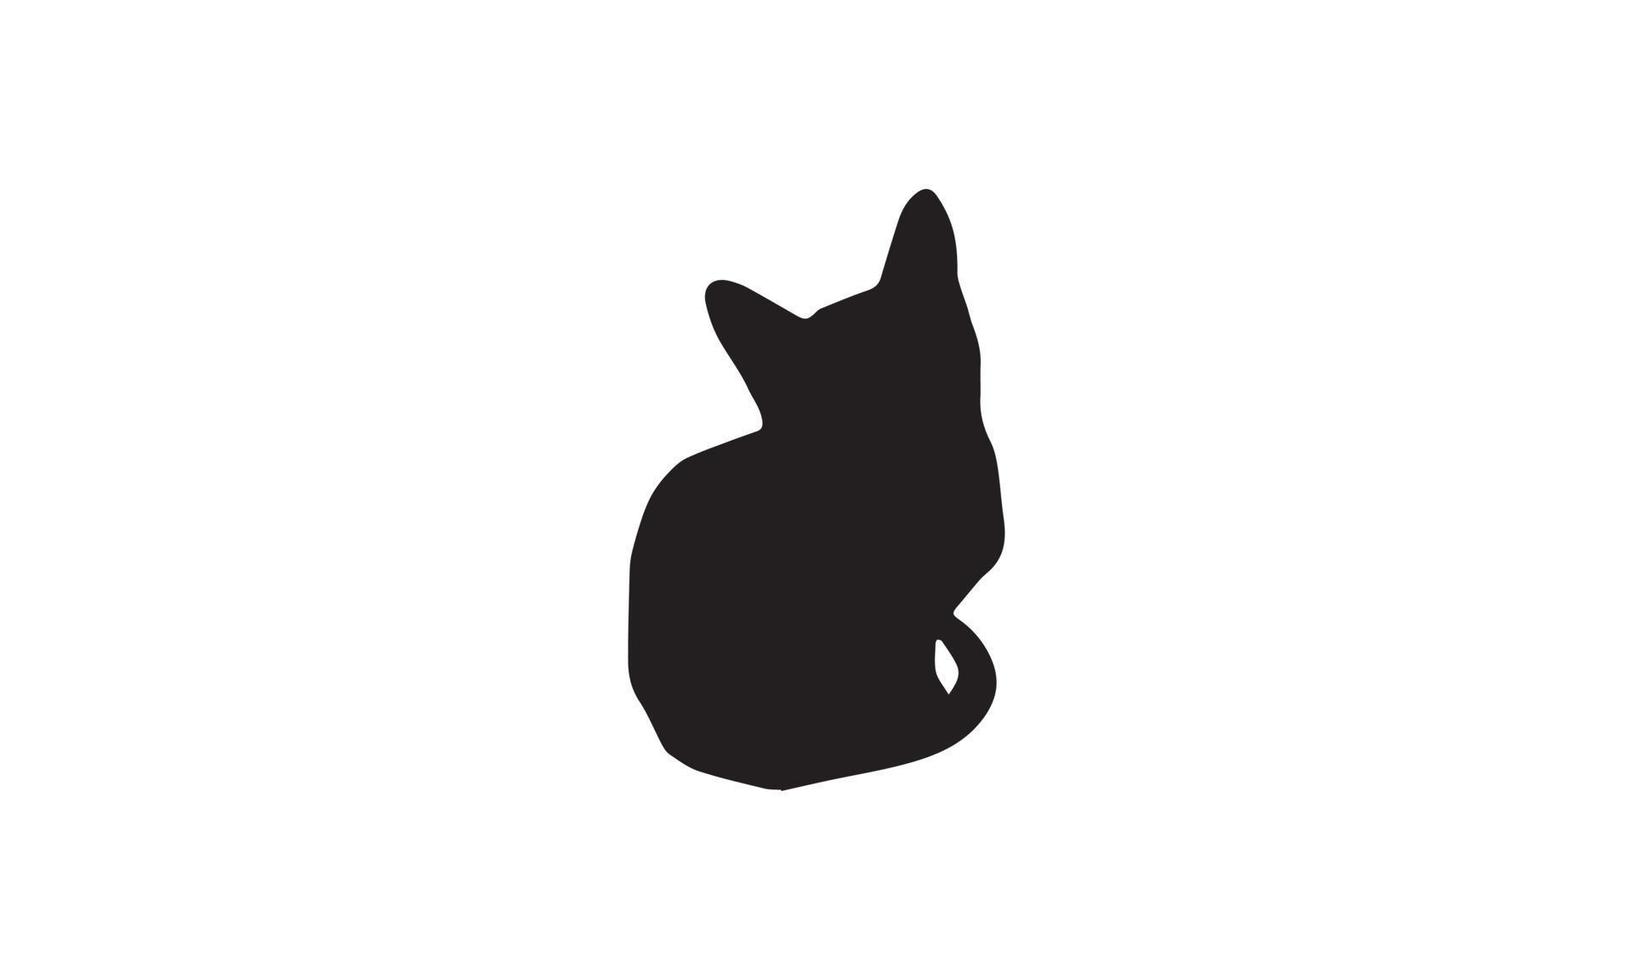 desenho de ilustração vetorial de gato preto e branco vetor